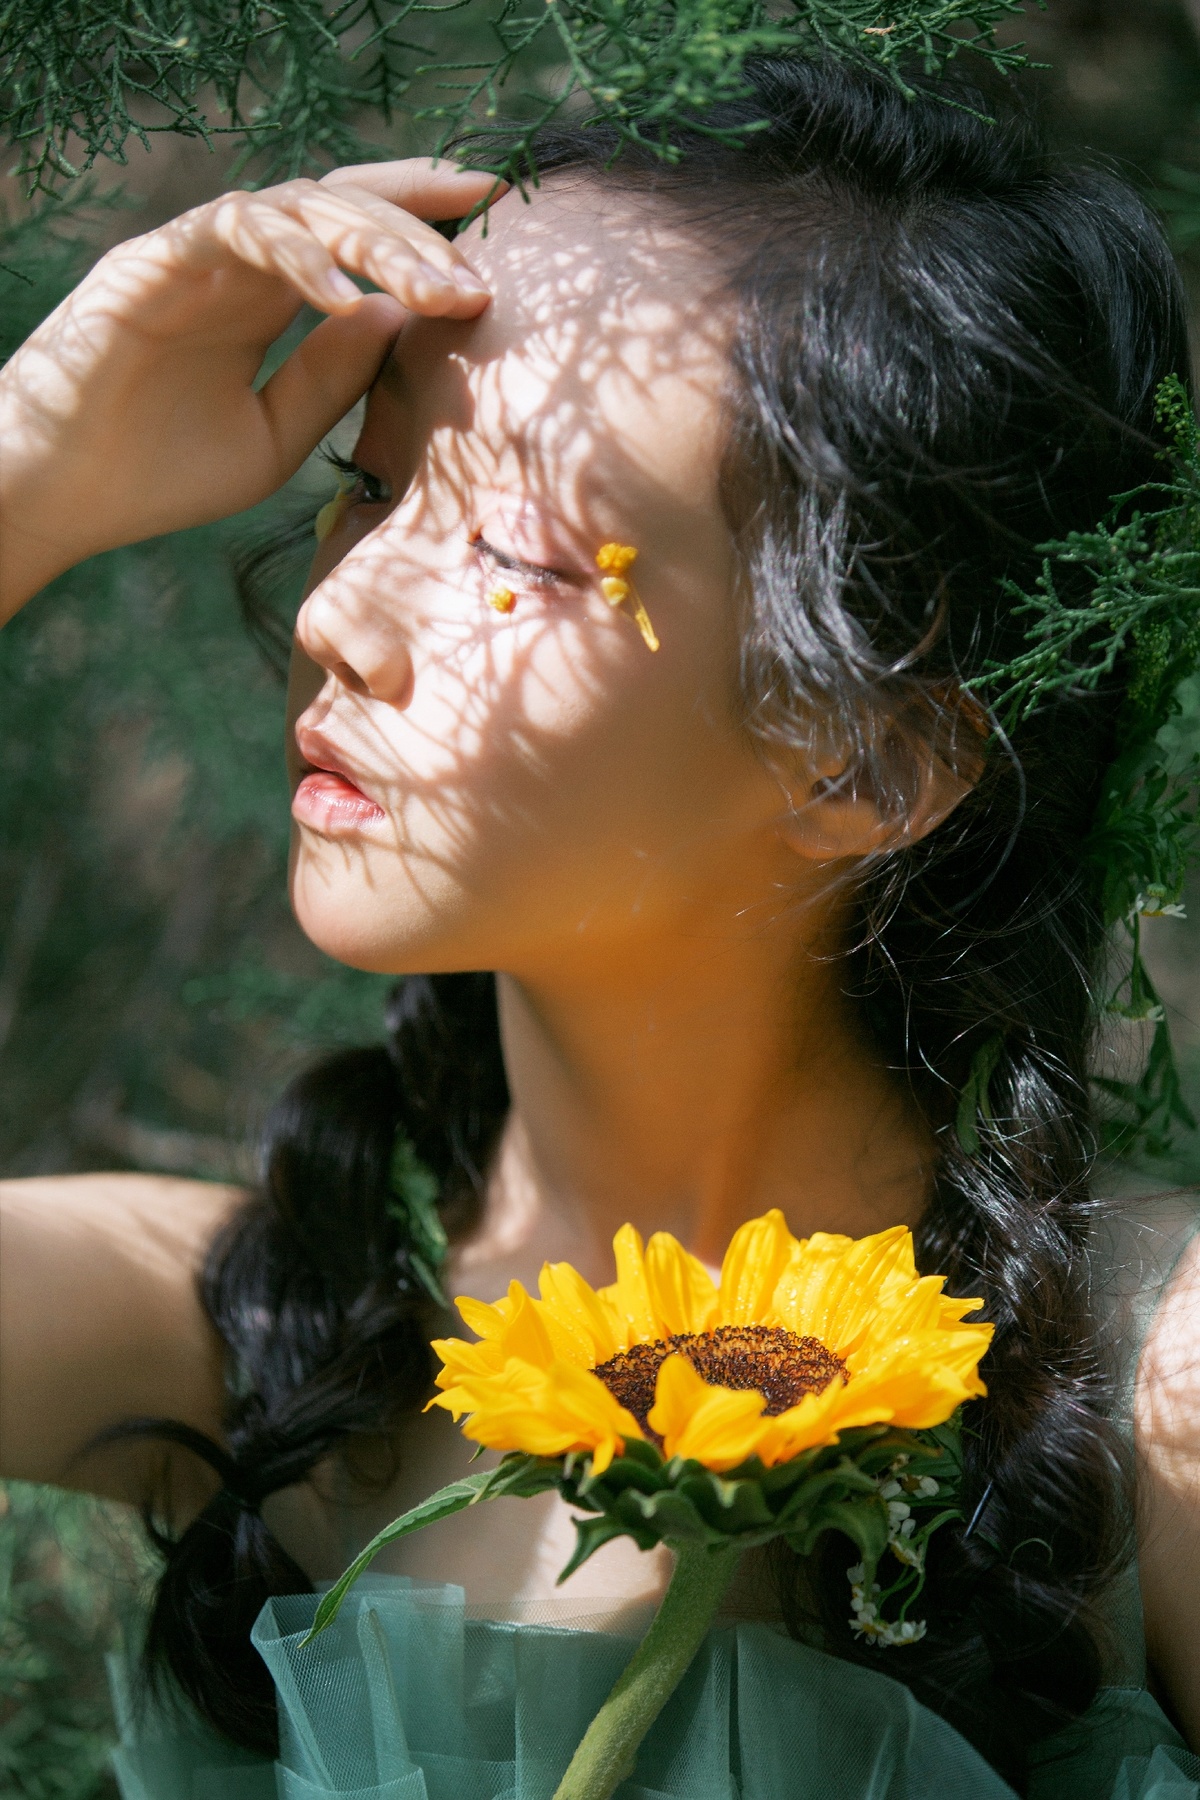 一位年轻女子举着黄色的花挡在脸前 身处绿色的森林中。